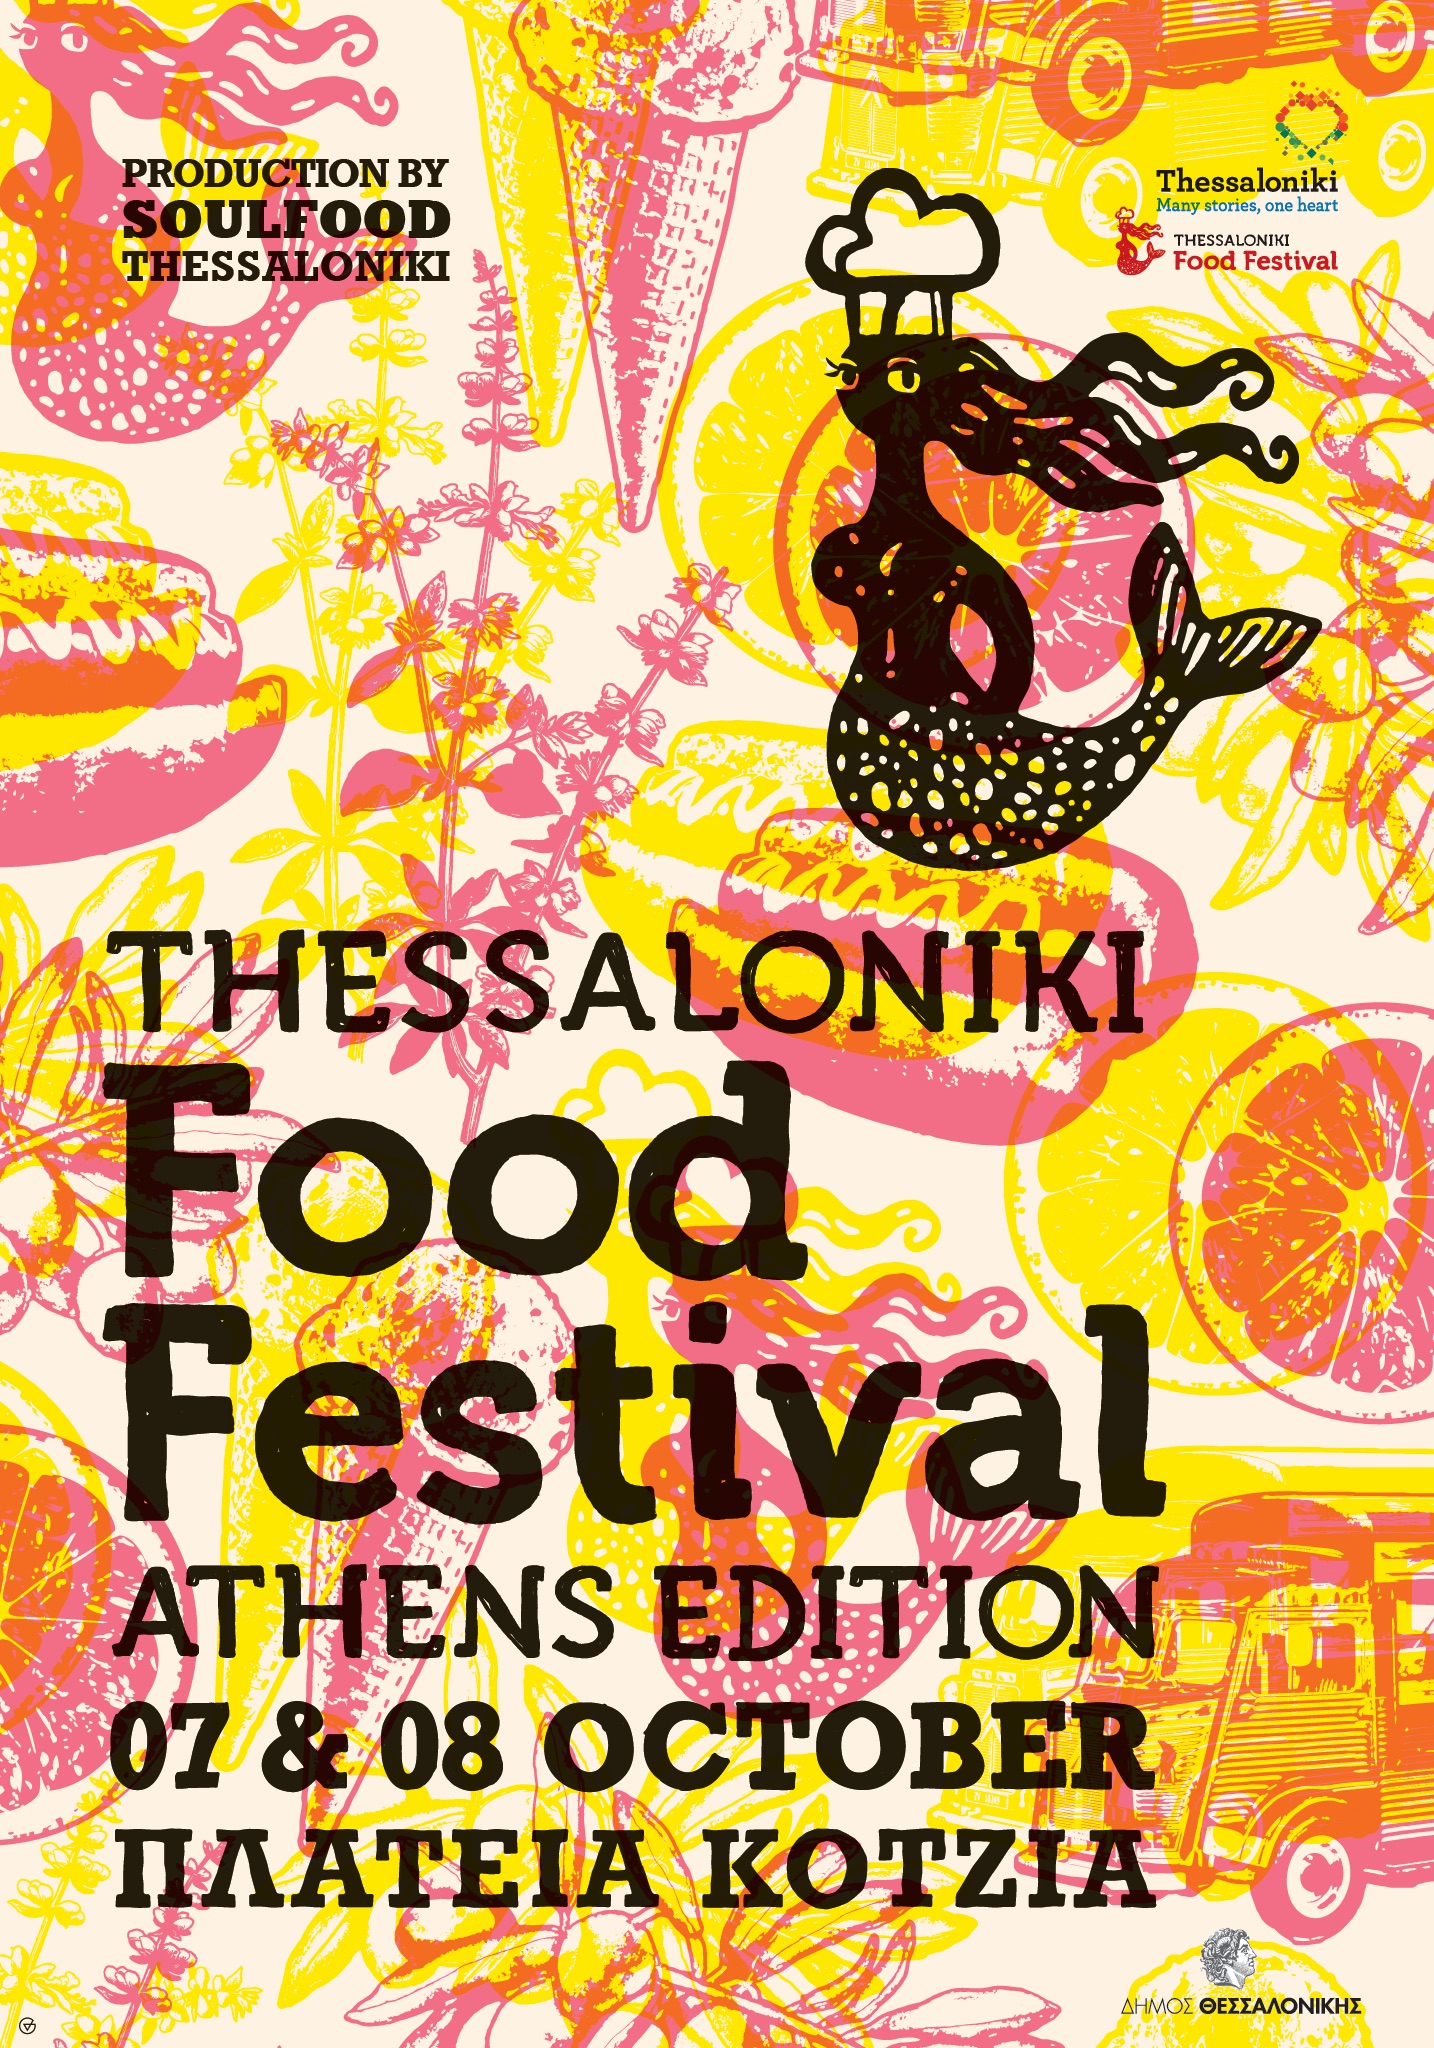 Το Thessaloniki Food Festival σε Athens Edition αυτό το σαββατοκύριακο